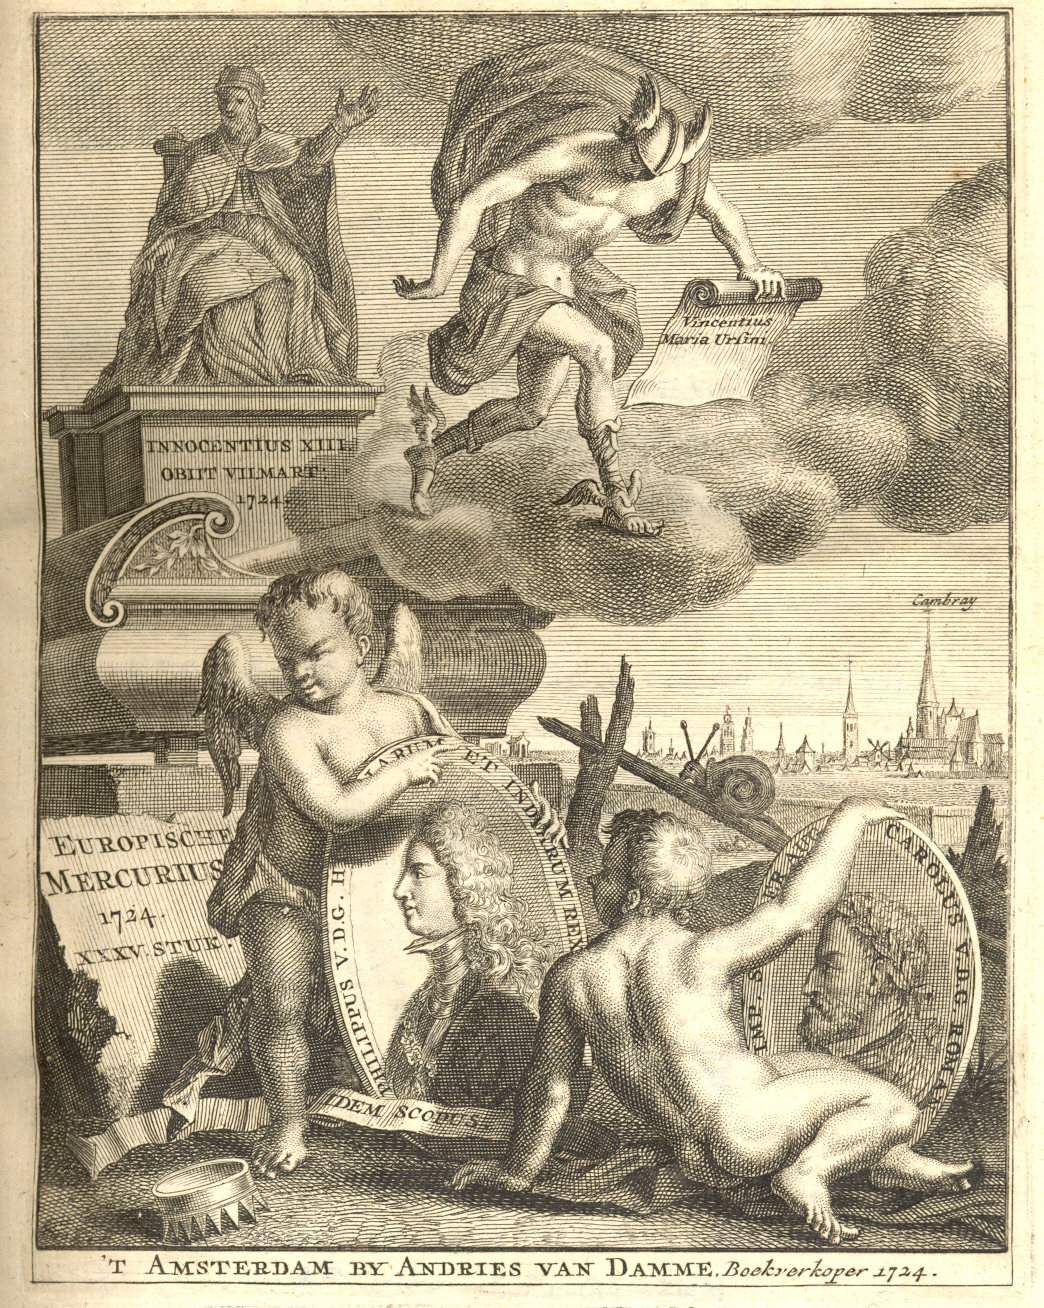 Europische Mercurius, 1724.